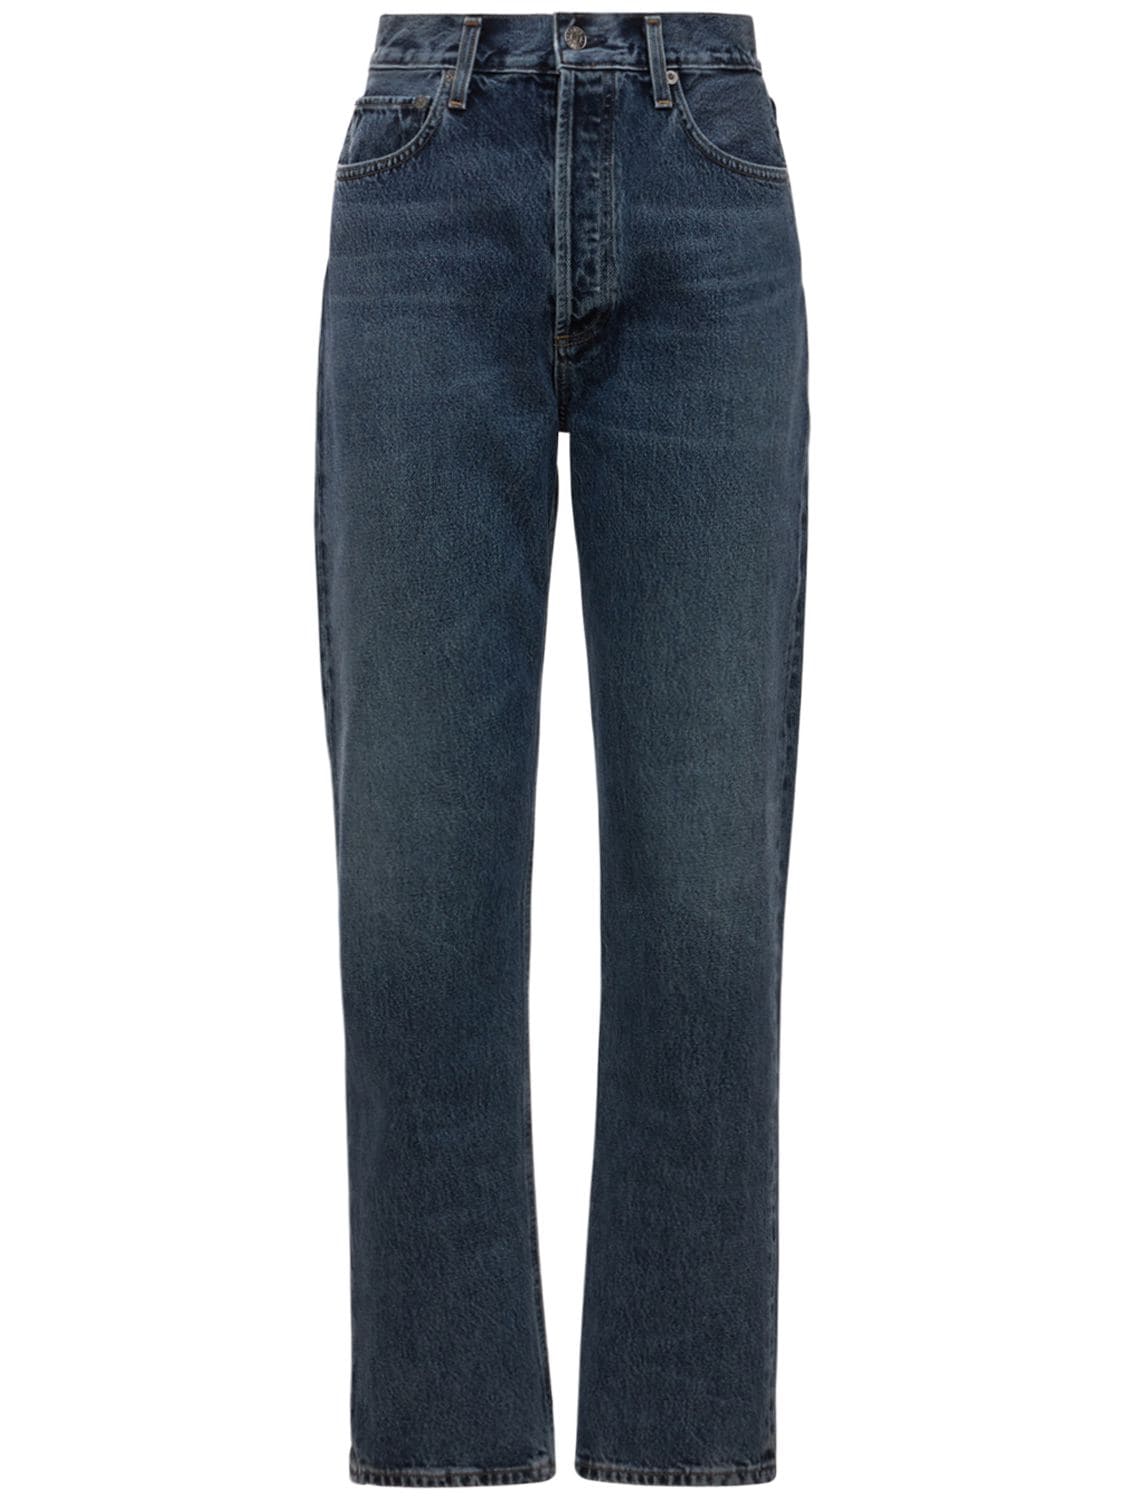 Mujer Jeans Rectos Con Cintura Alta 28 - AGOLDE - Modalova